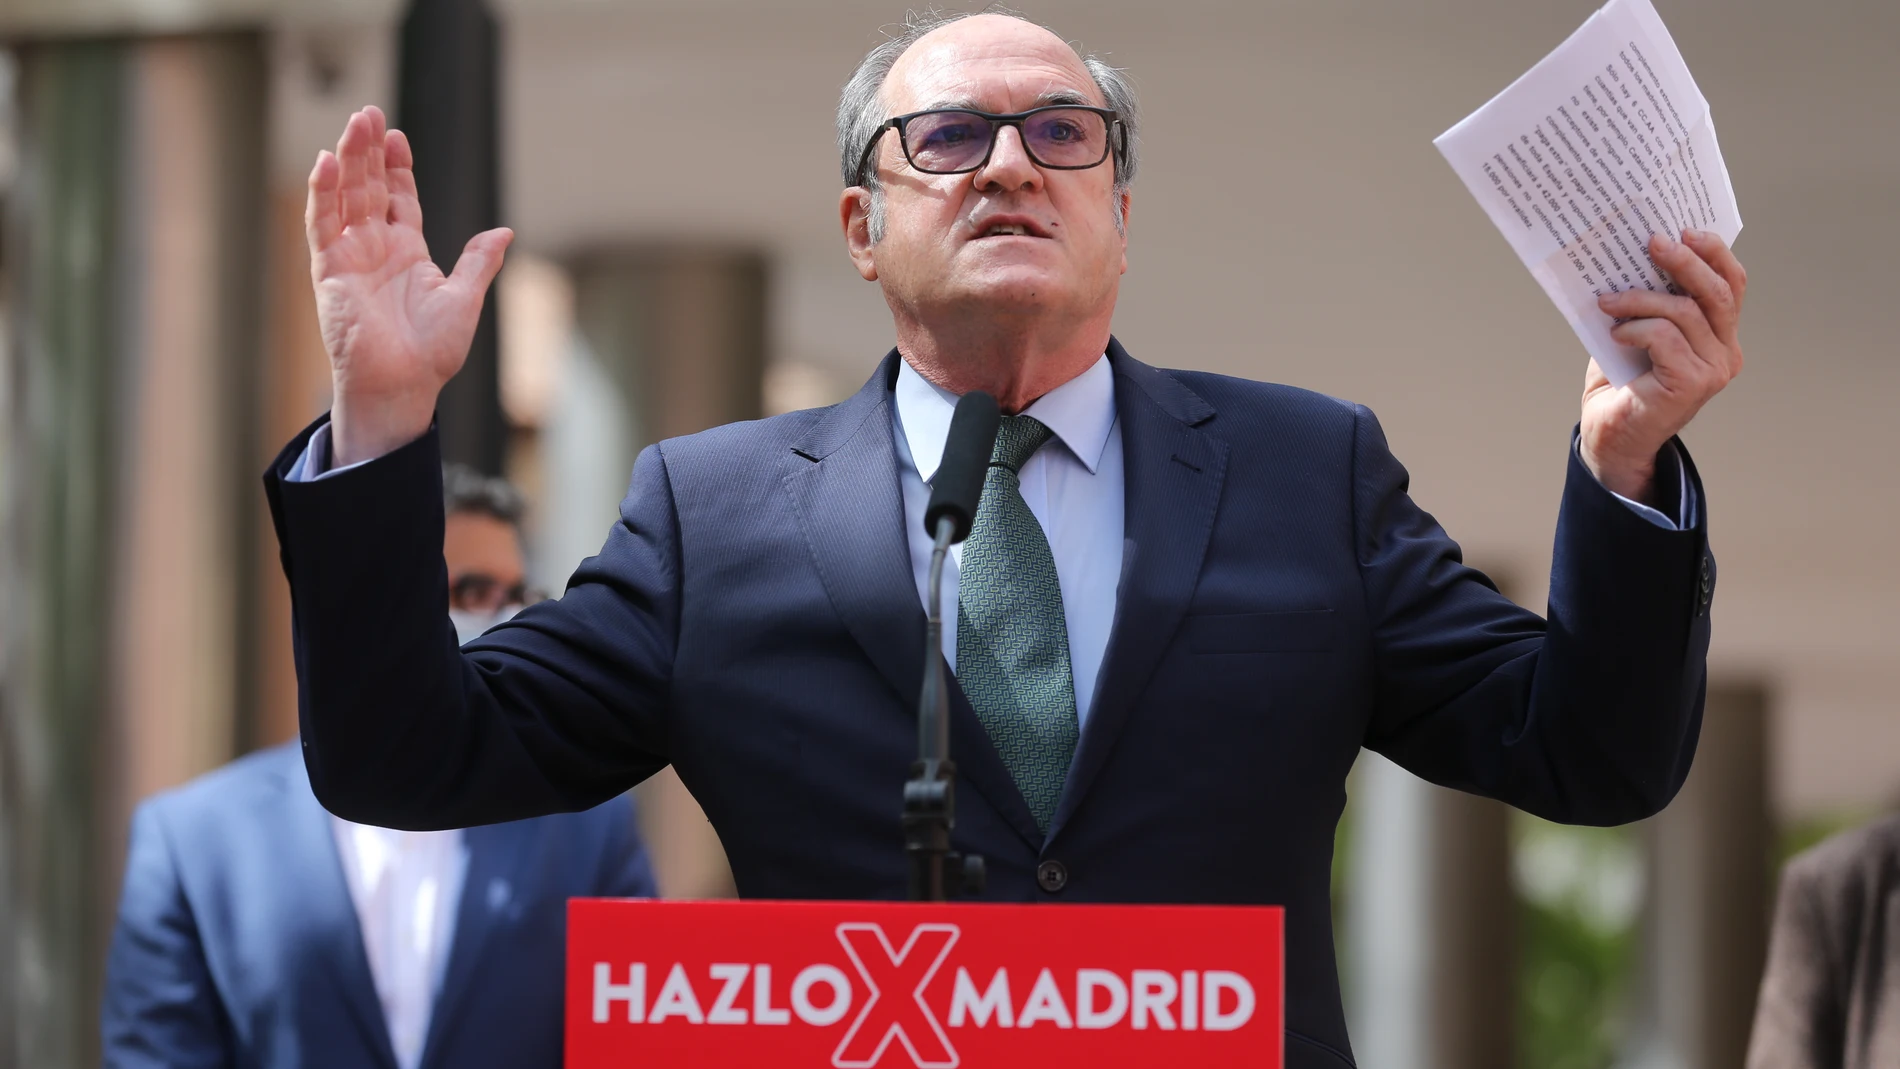 El candidato del PSOE a la Presidencia de la Comunidad de Madrid, Ángel Gabilondo, interviene durante un acto campaña en Alcobendas, Madrid, (España)